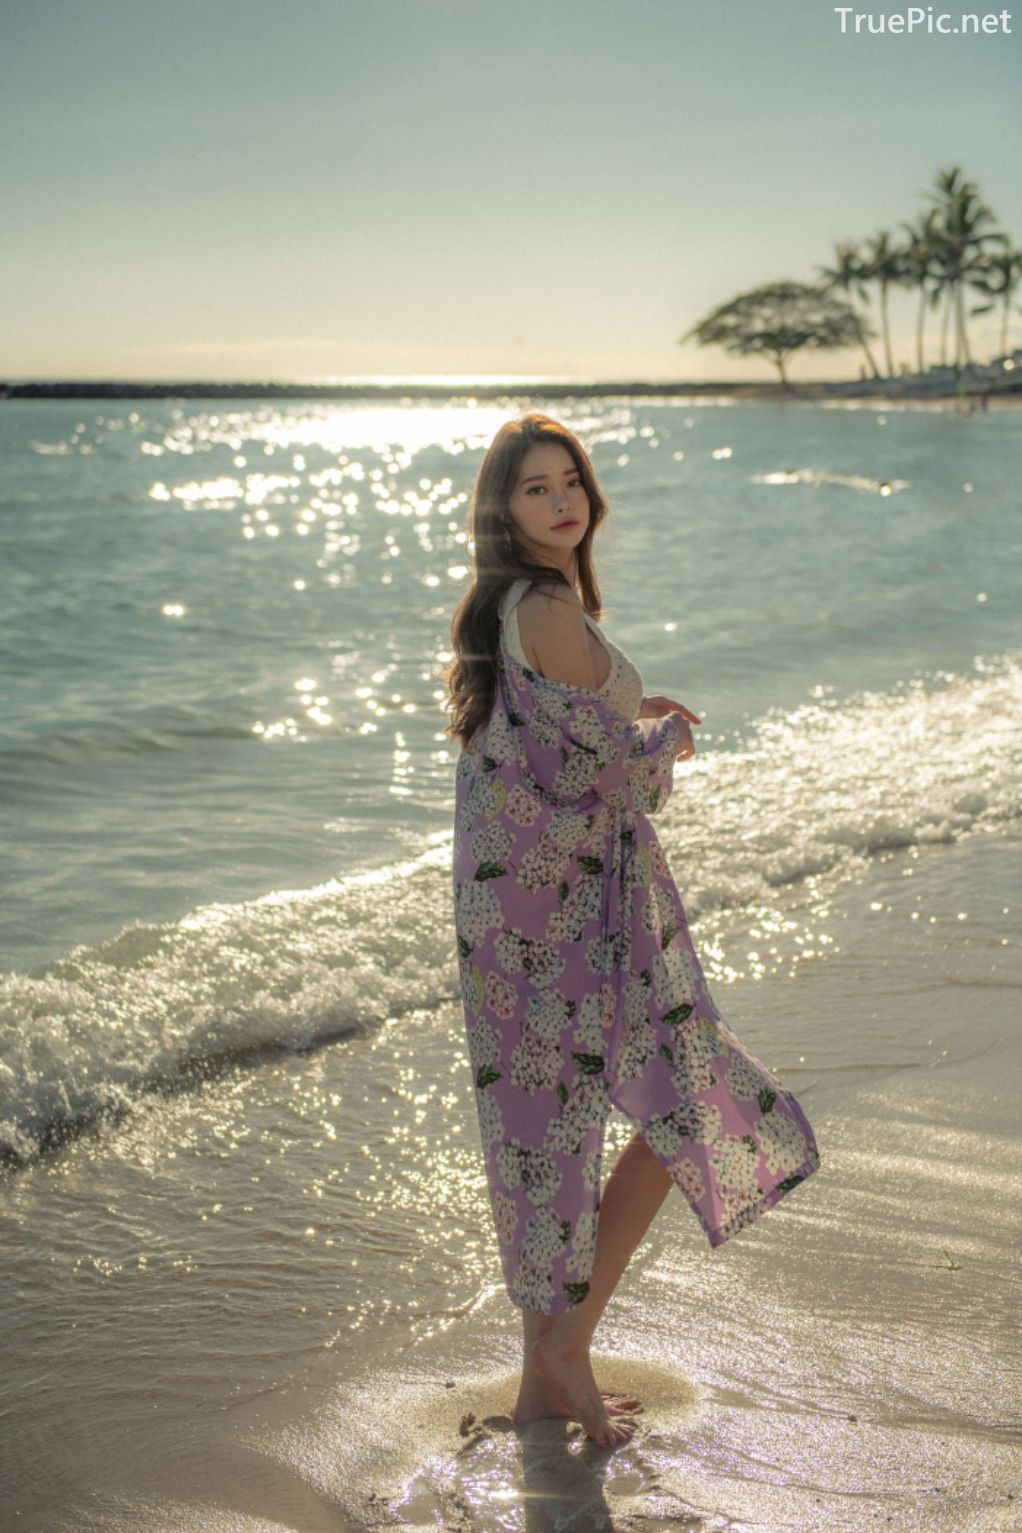 Korean Fashion Model - Kim Moon Hee as an Angel in Summer Swimsuit - TruePic.net - Picture 30